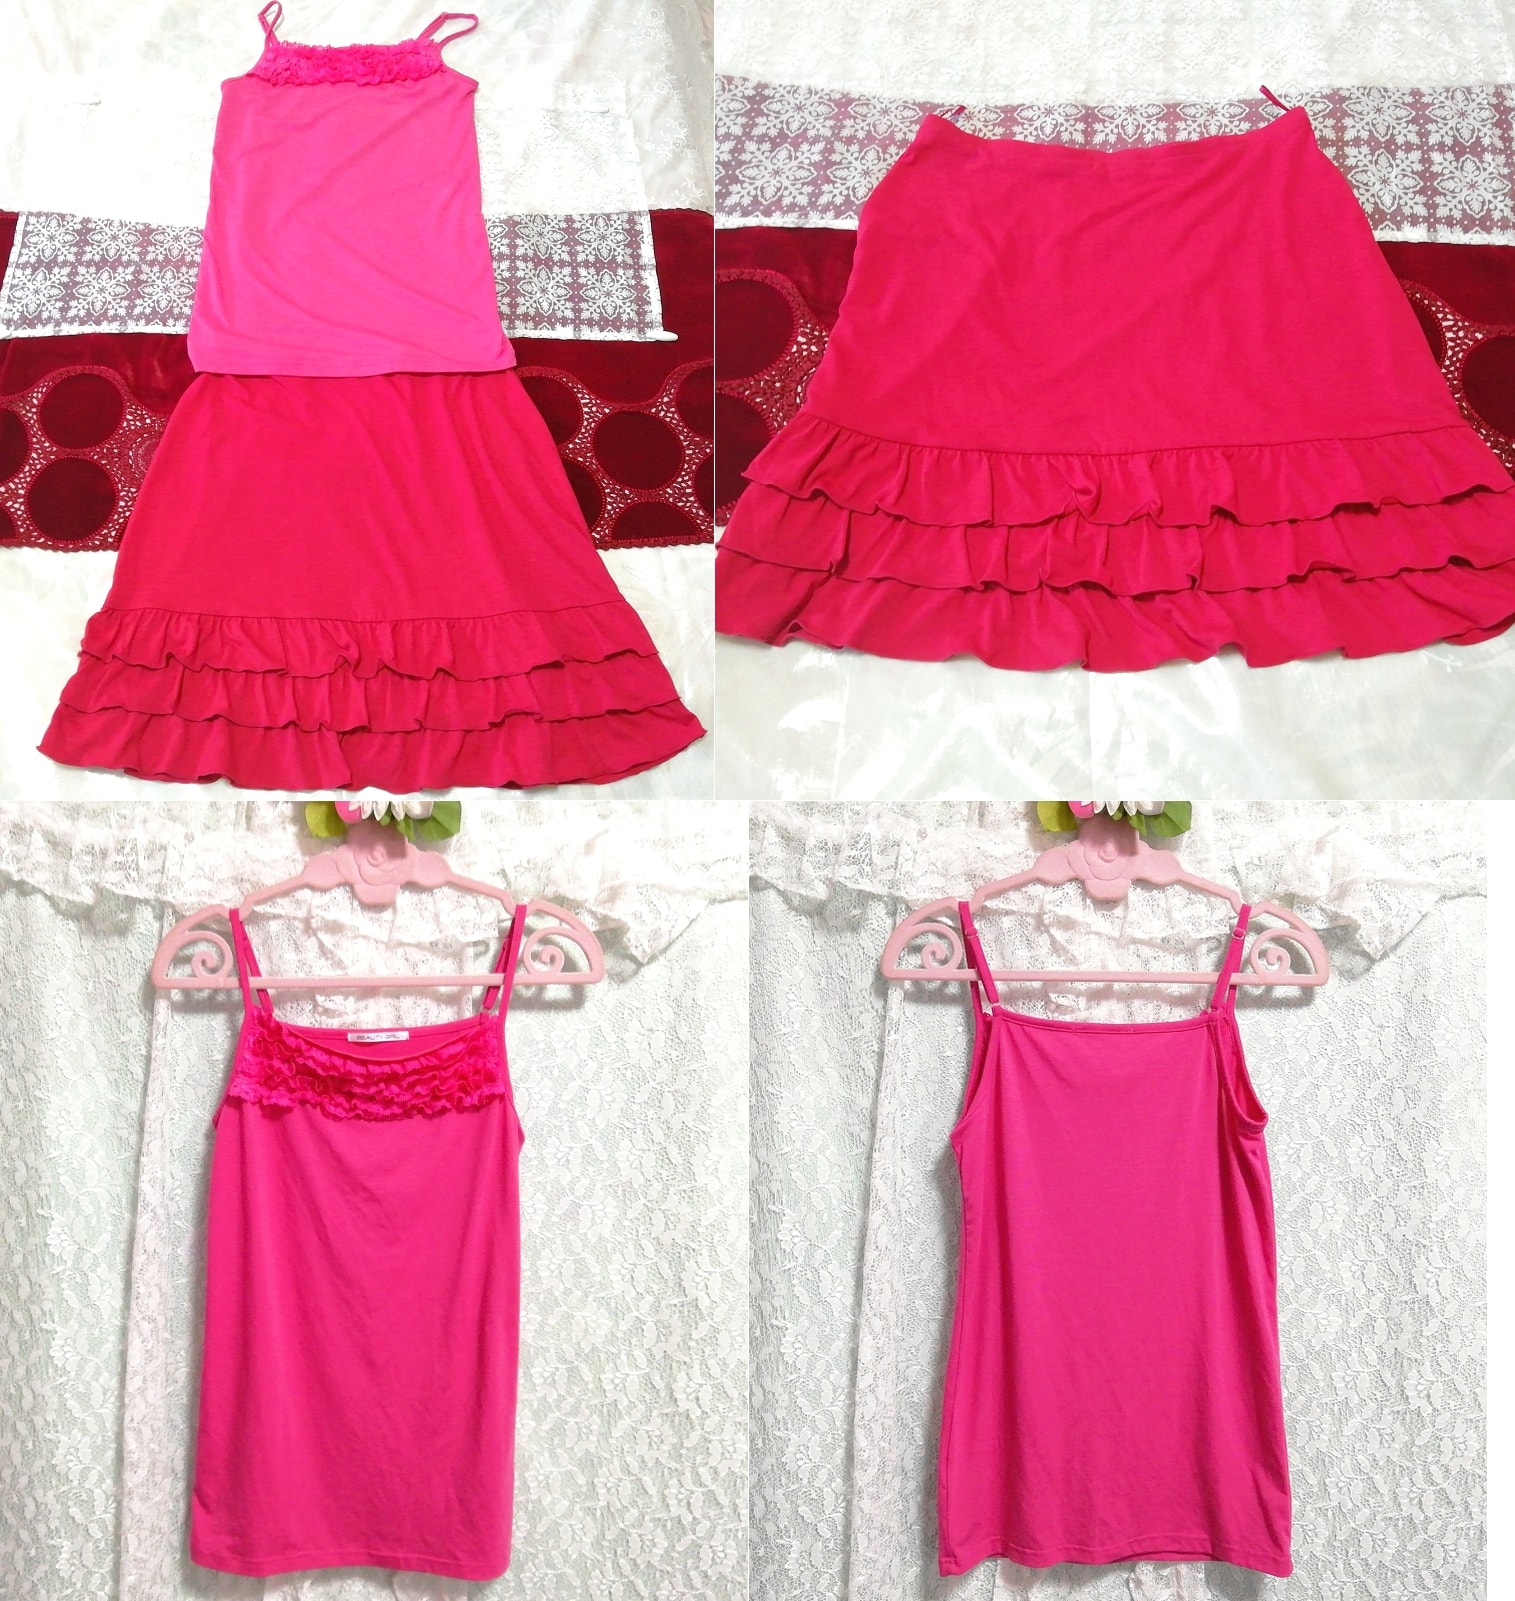 핑크 레이스 캐미솔 네글리제 나이트가운 레드 러플 미니스커트 2P, 패션, 숙녀 패션, 잠옷, 잠옷